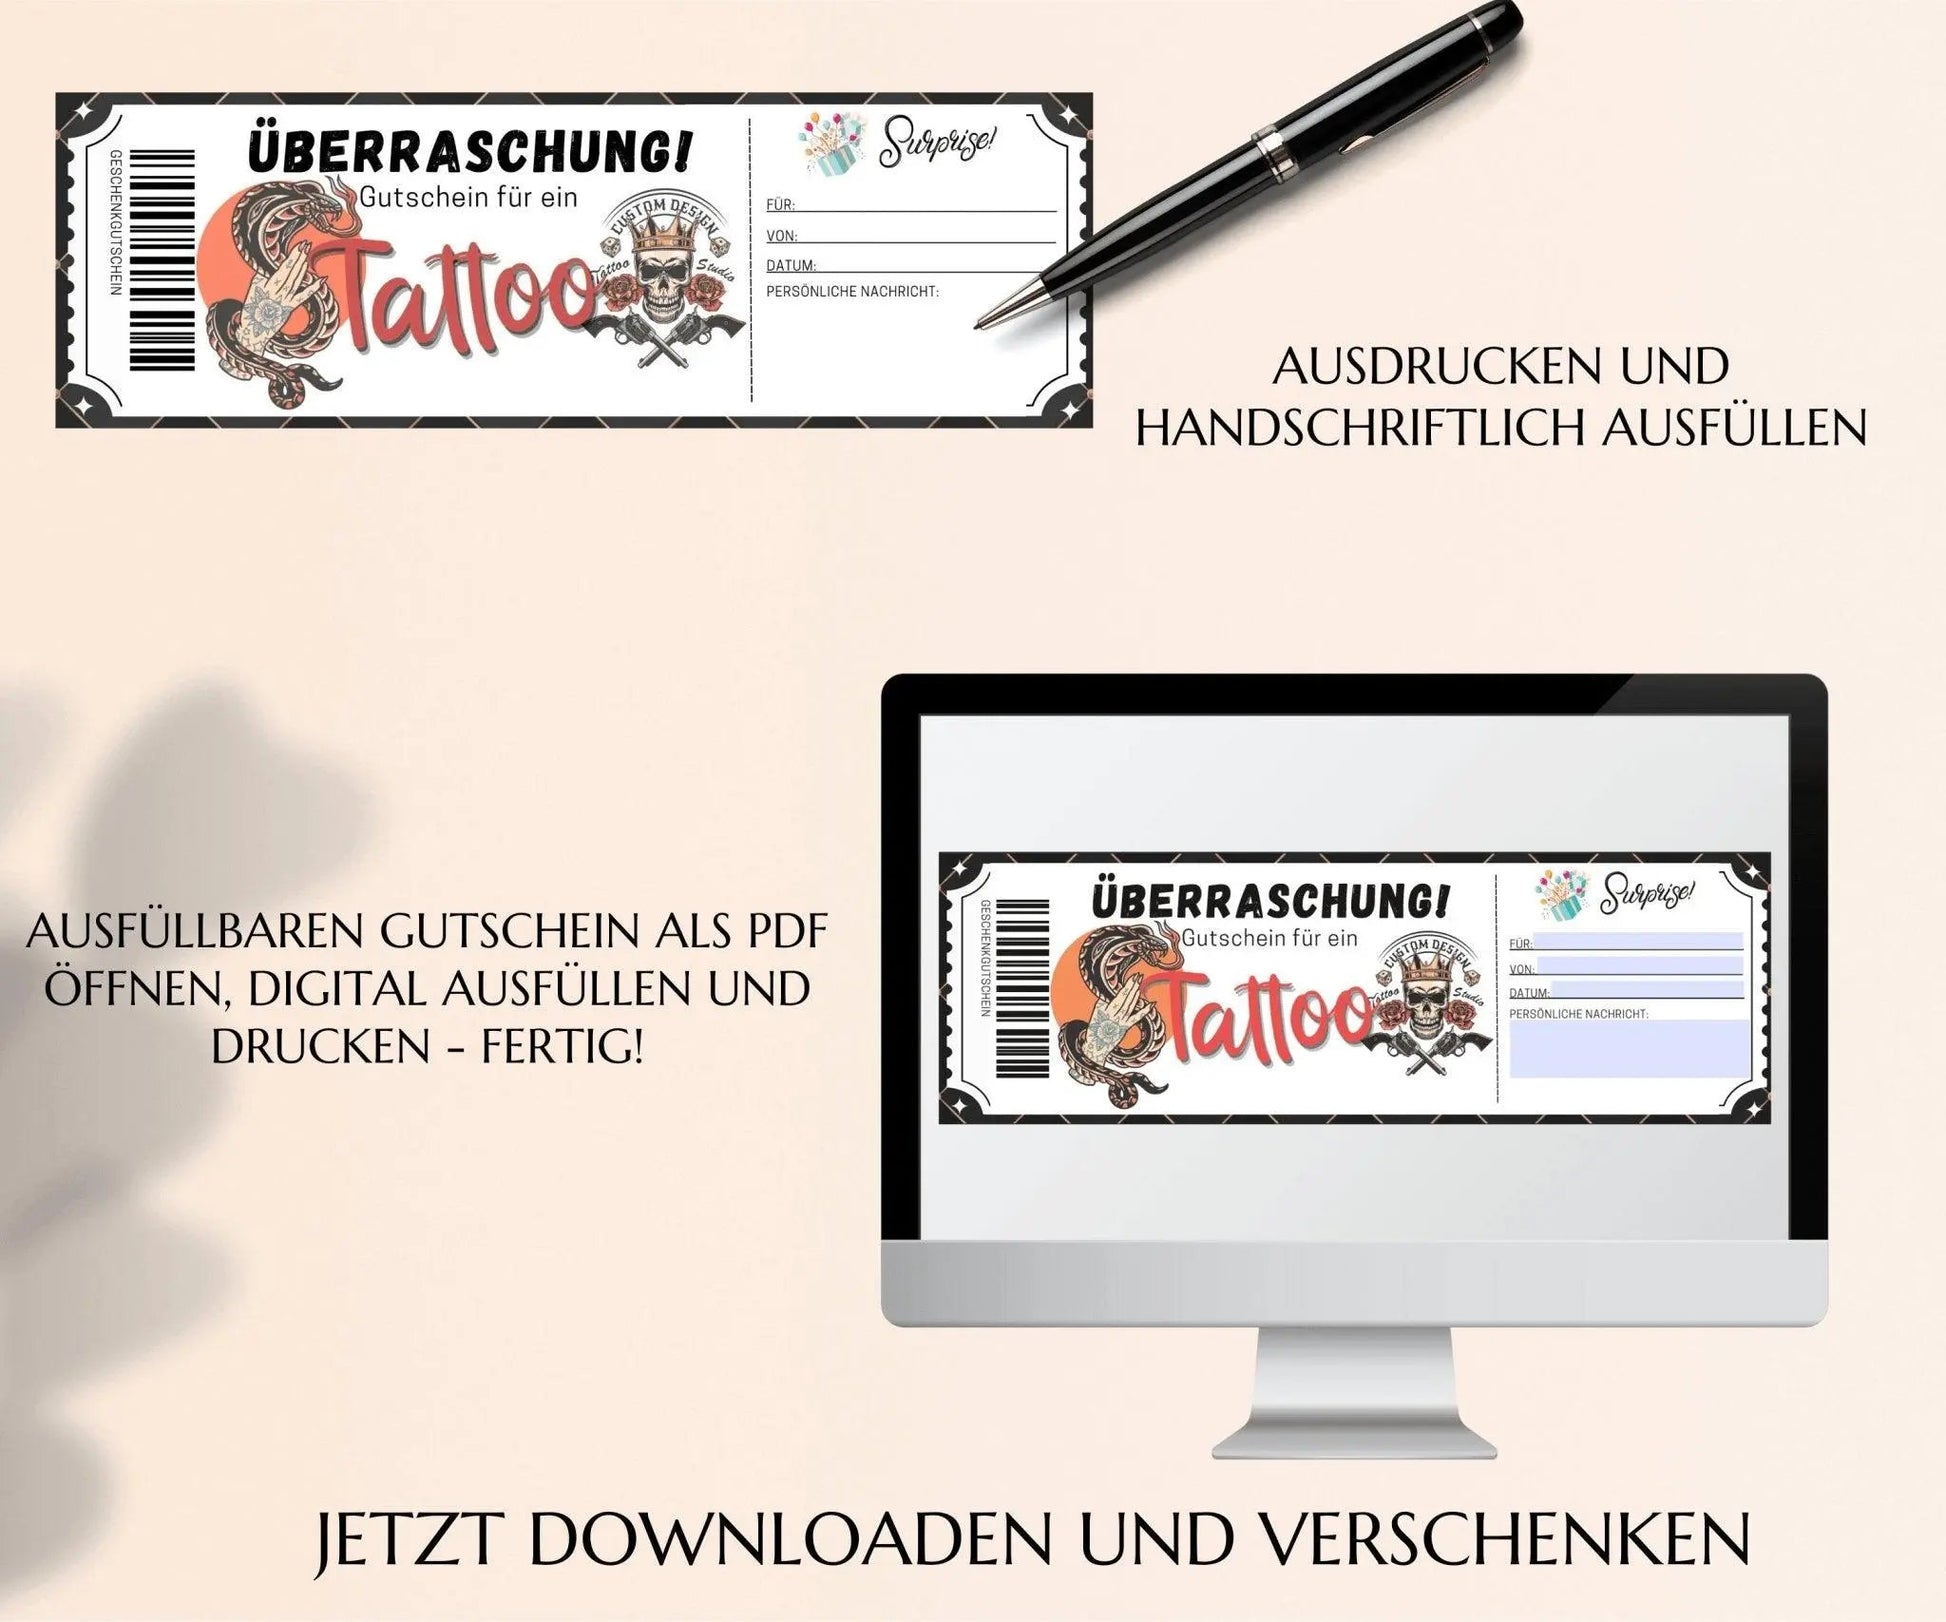 Gutschein für ein Tattoo Vorlage - JSKDesignStudio.de